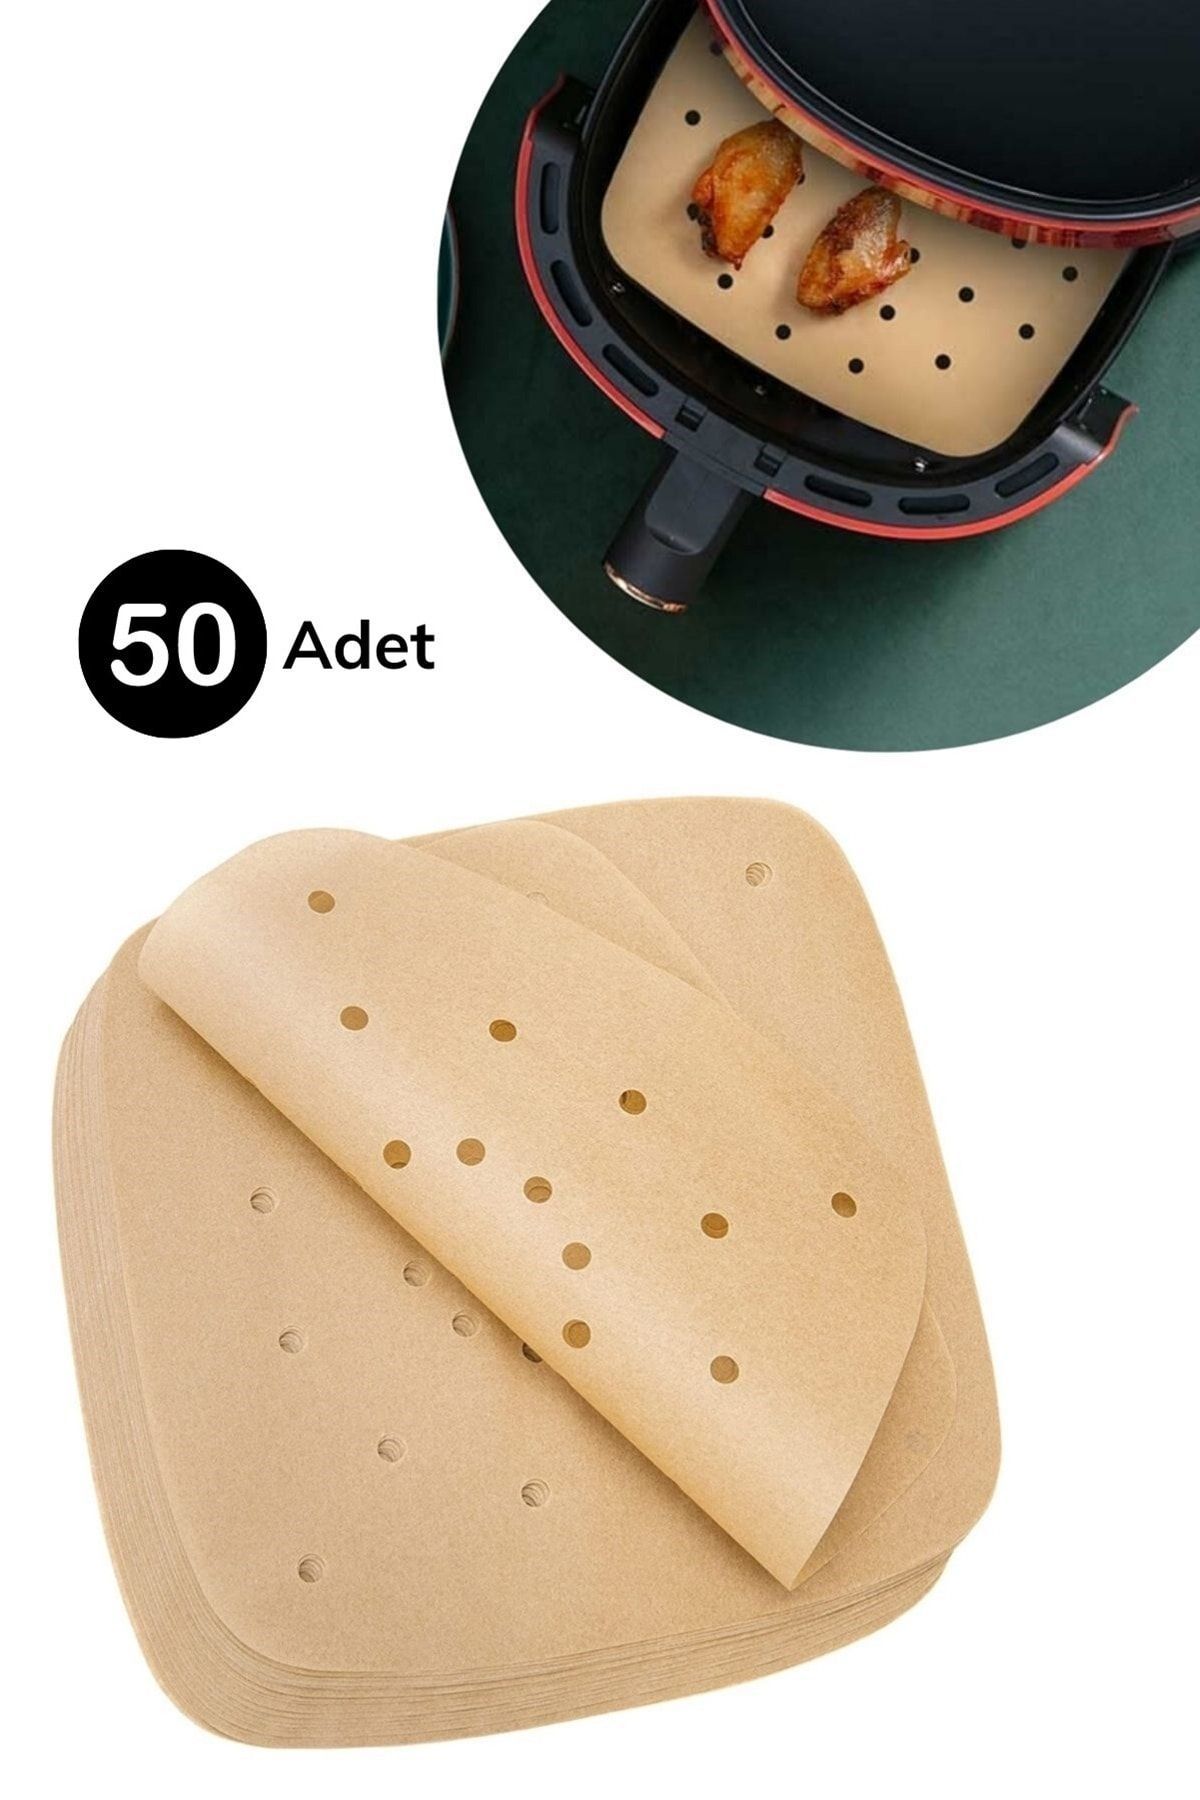 50 Adet Air Fryer Pişirme Kağıdı Tek Kullanımlık Hava Fritöz Yapışmaz Yağlı Kağıt Delikli Model